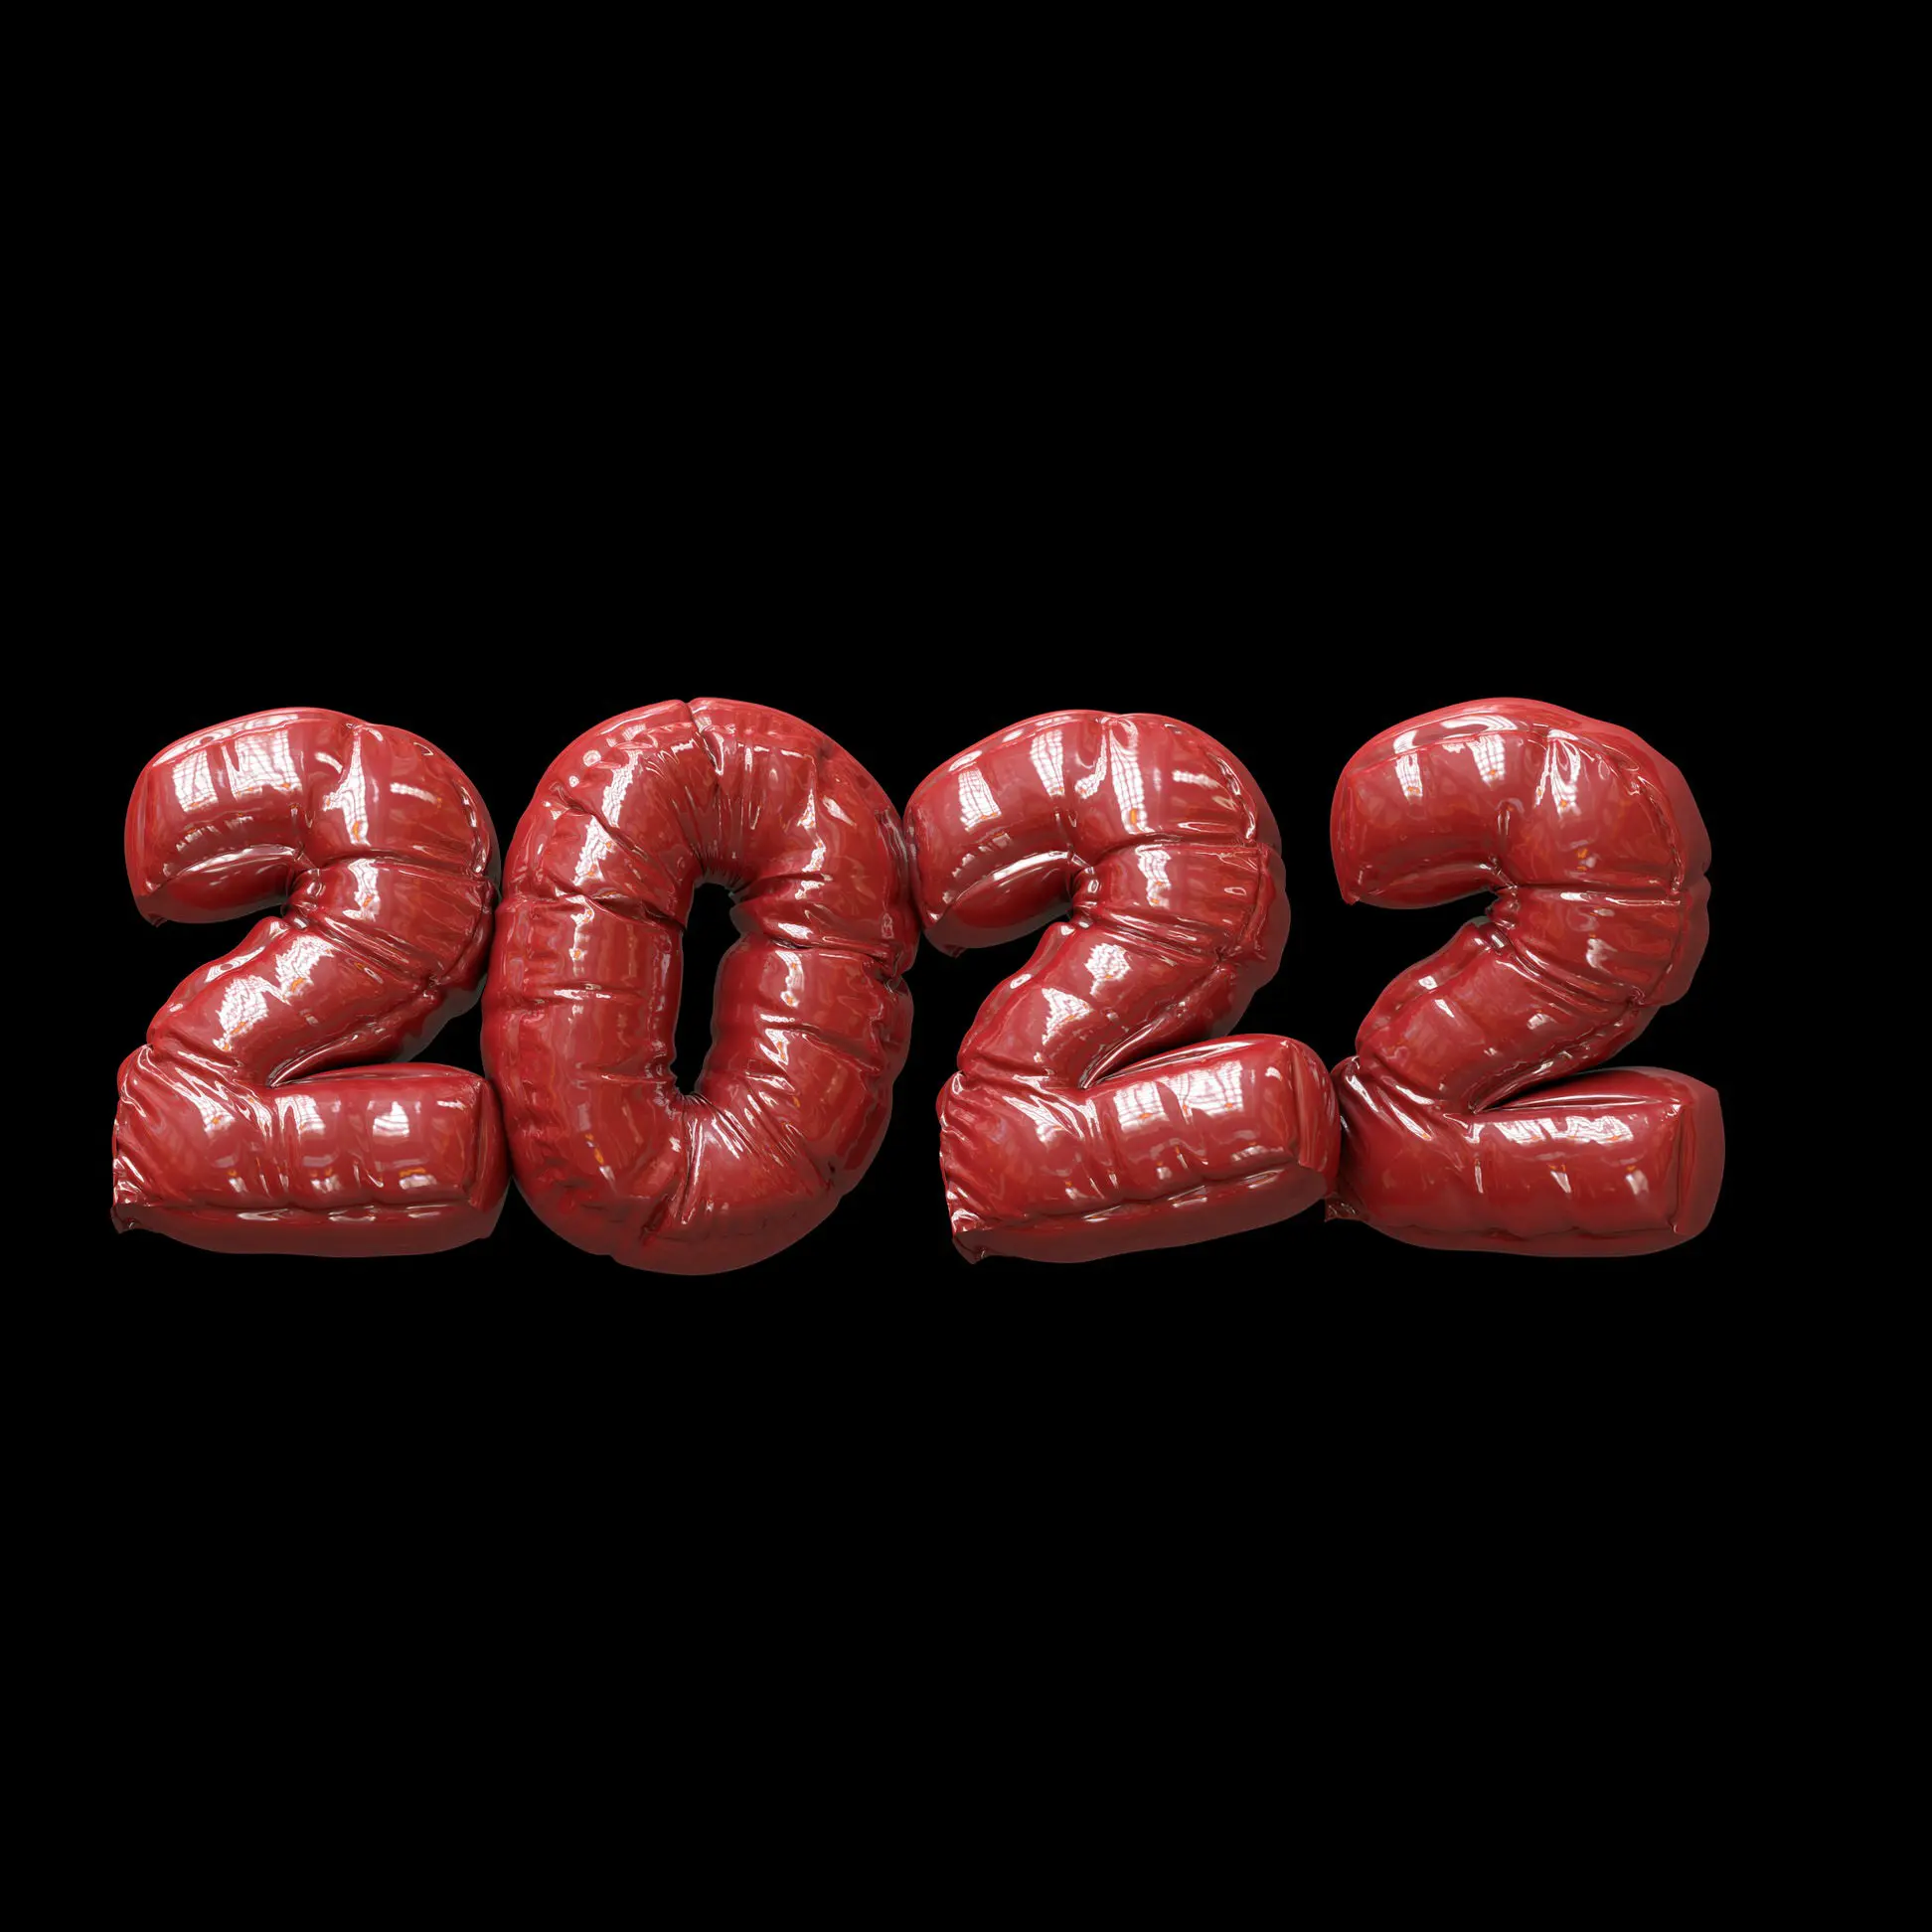 2022 trends photo